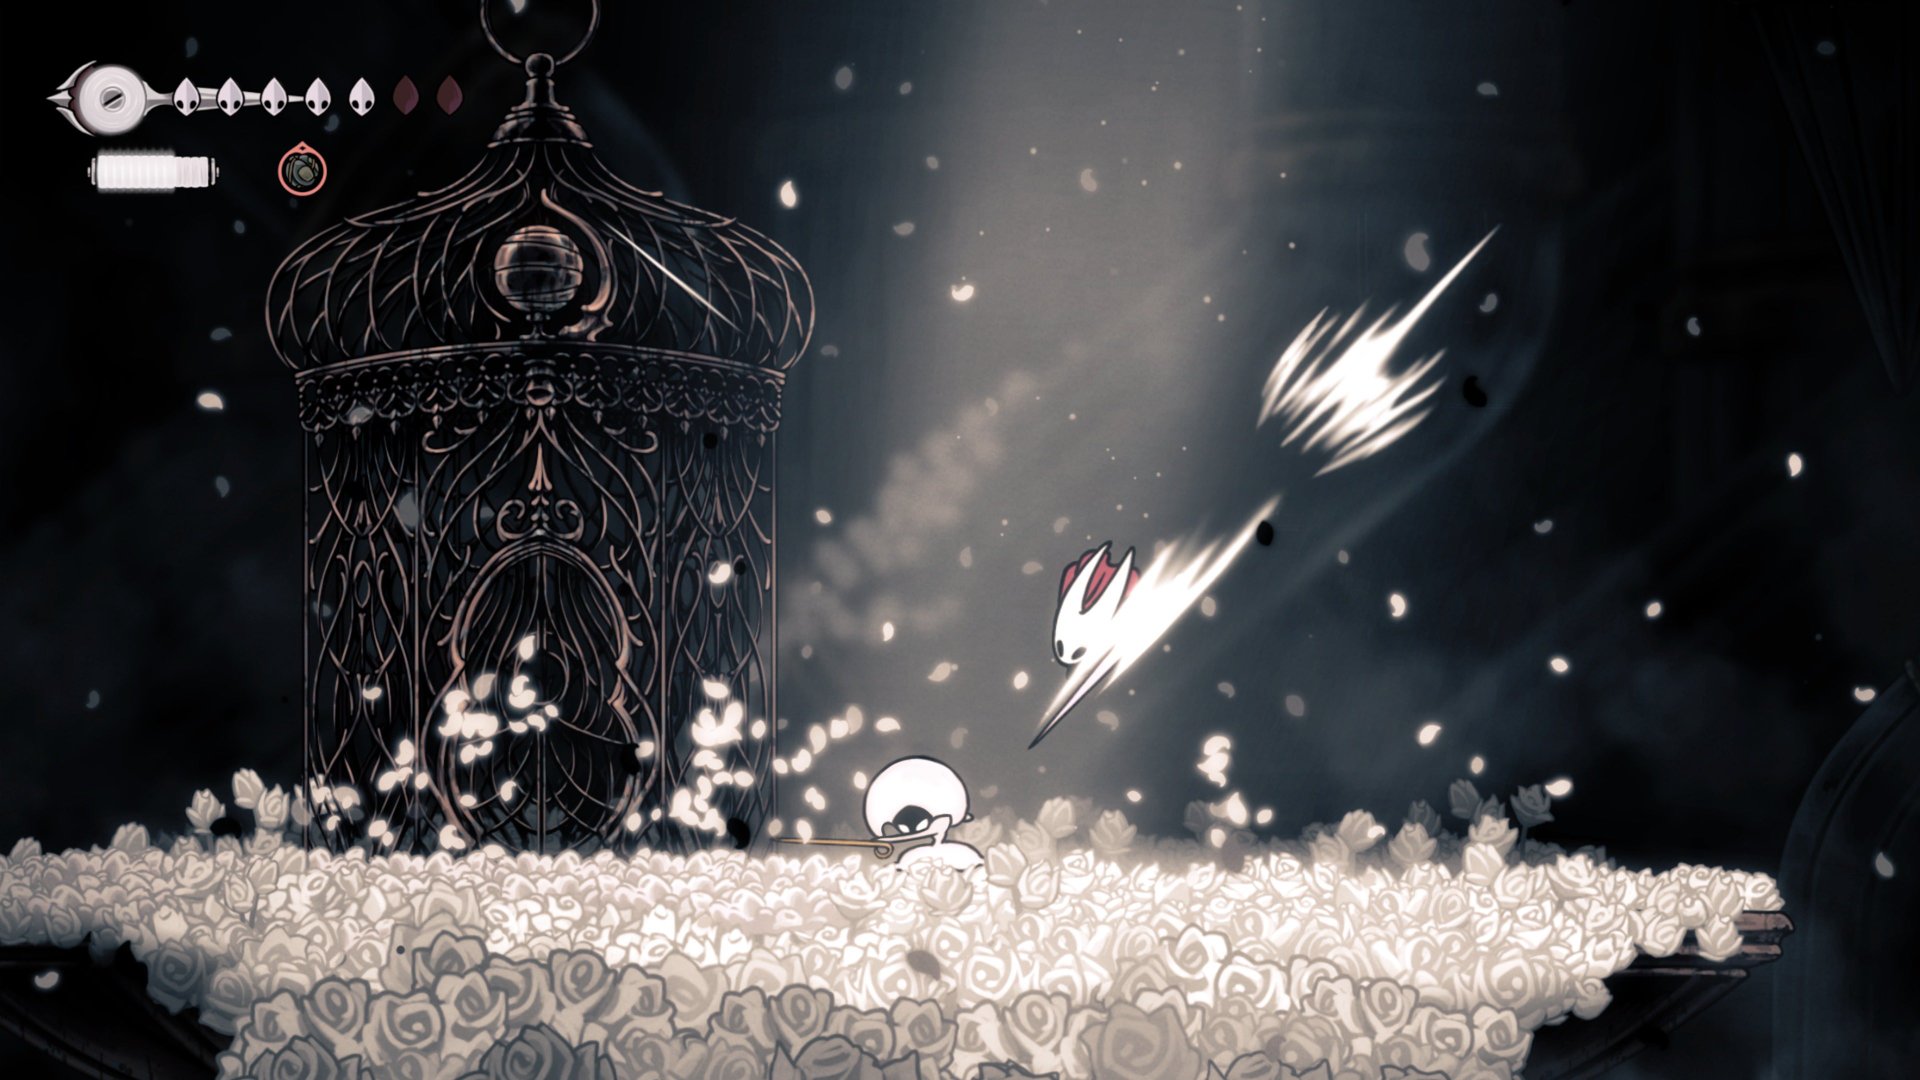 《空洞骑士：丝绸之歌》将登陆PS4和PS5平台